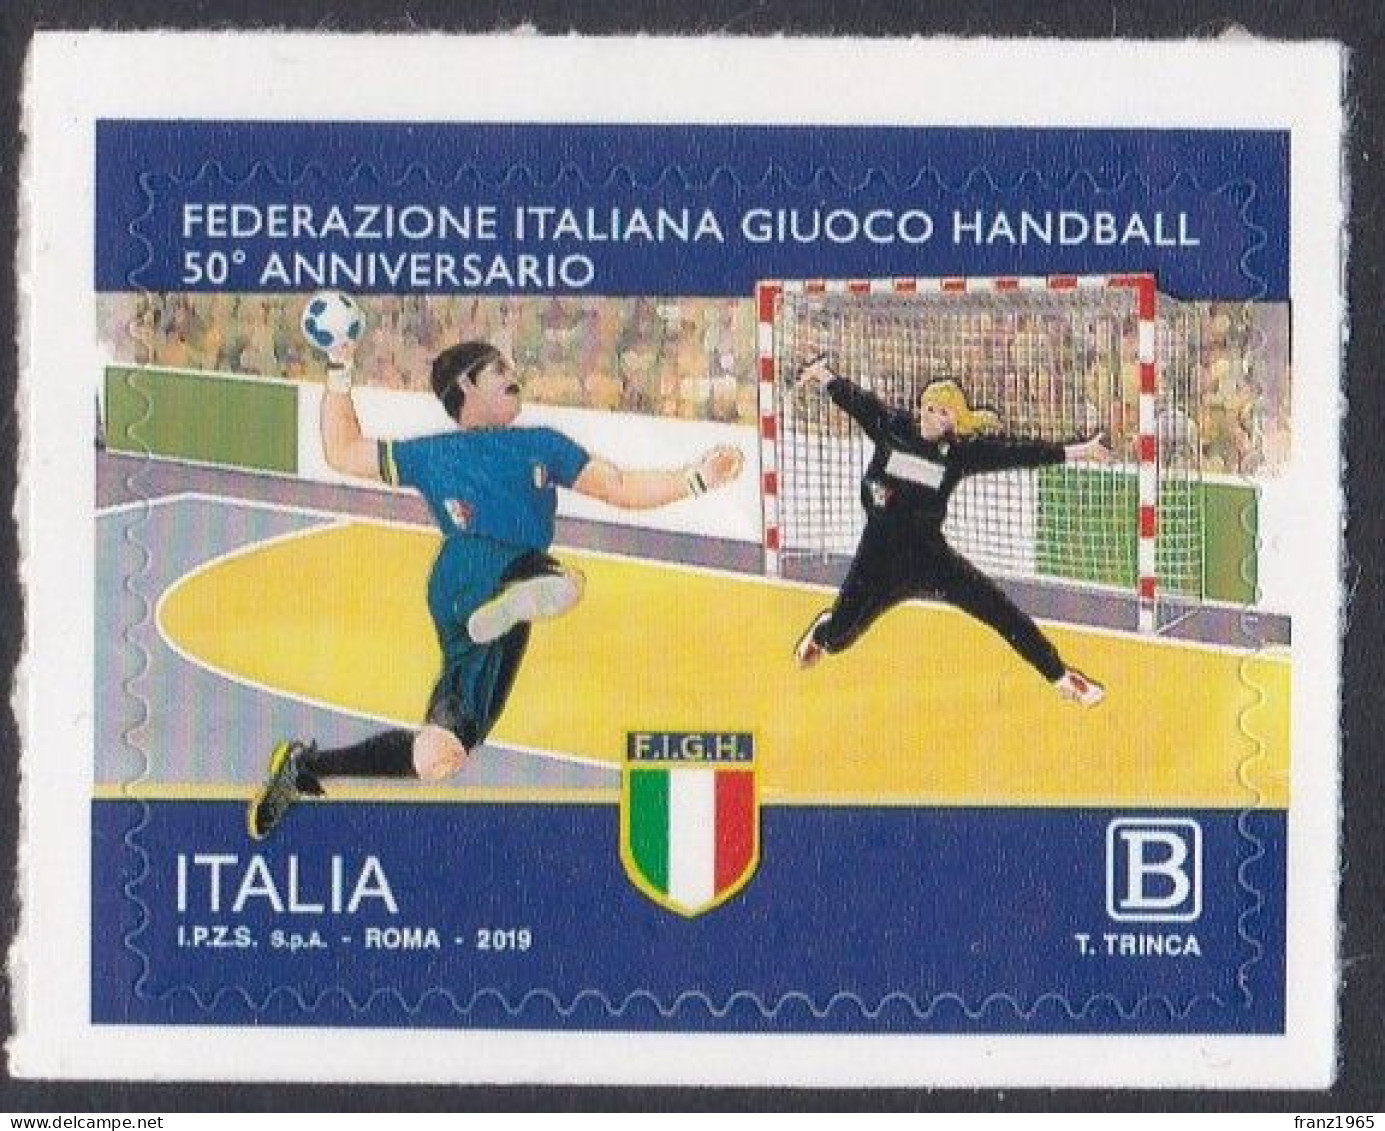 Italian Handball Federation - 2019 - Pallamano